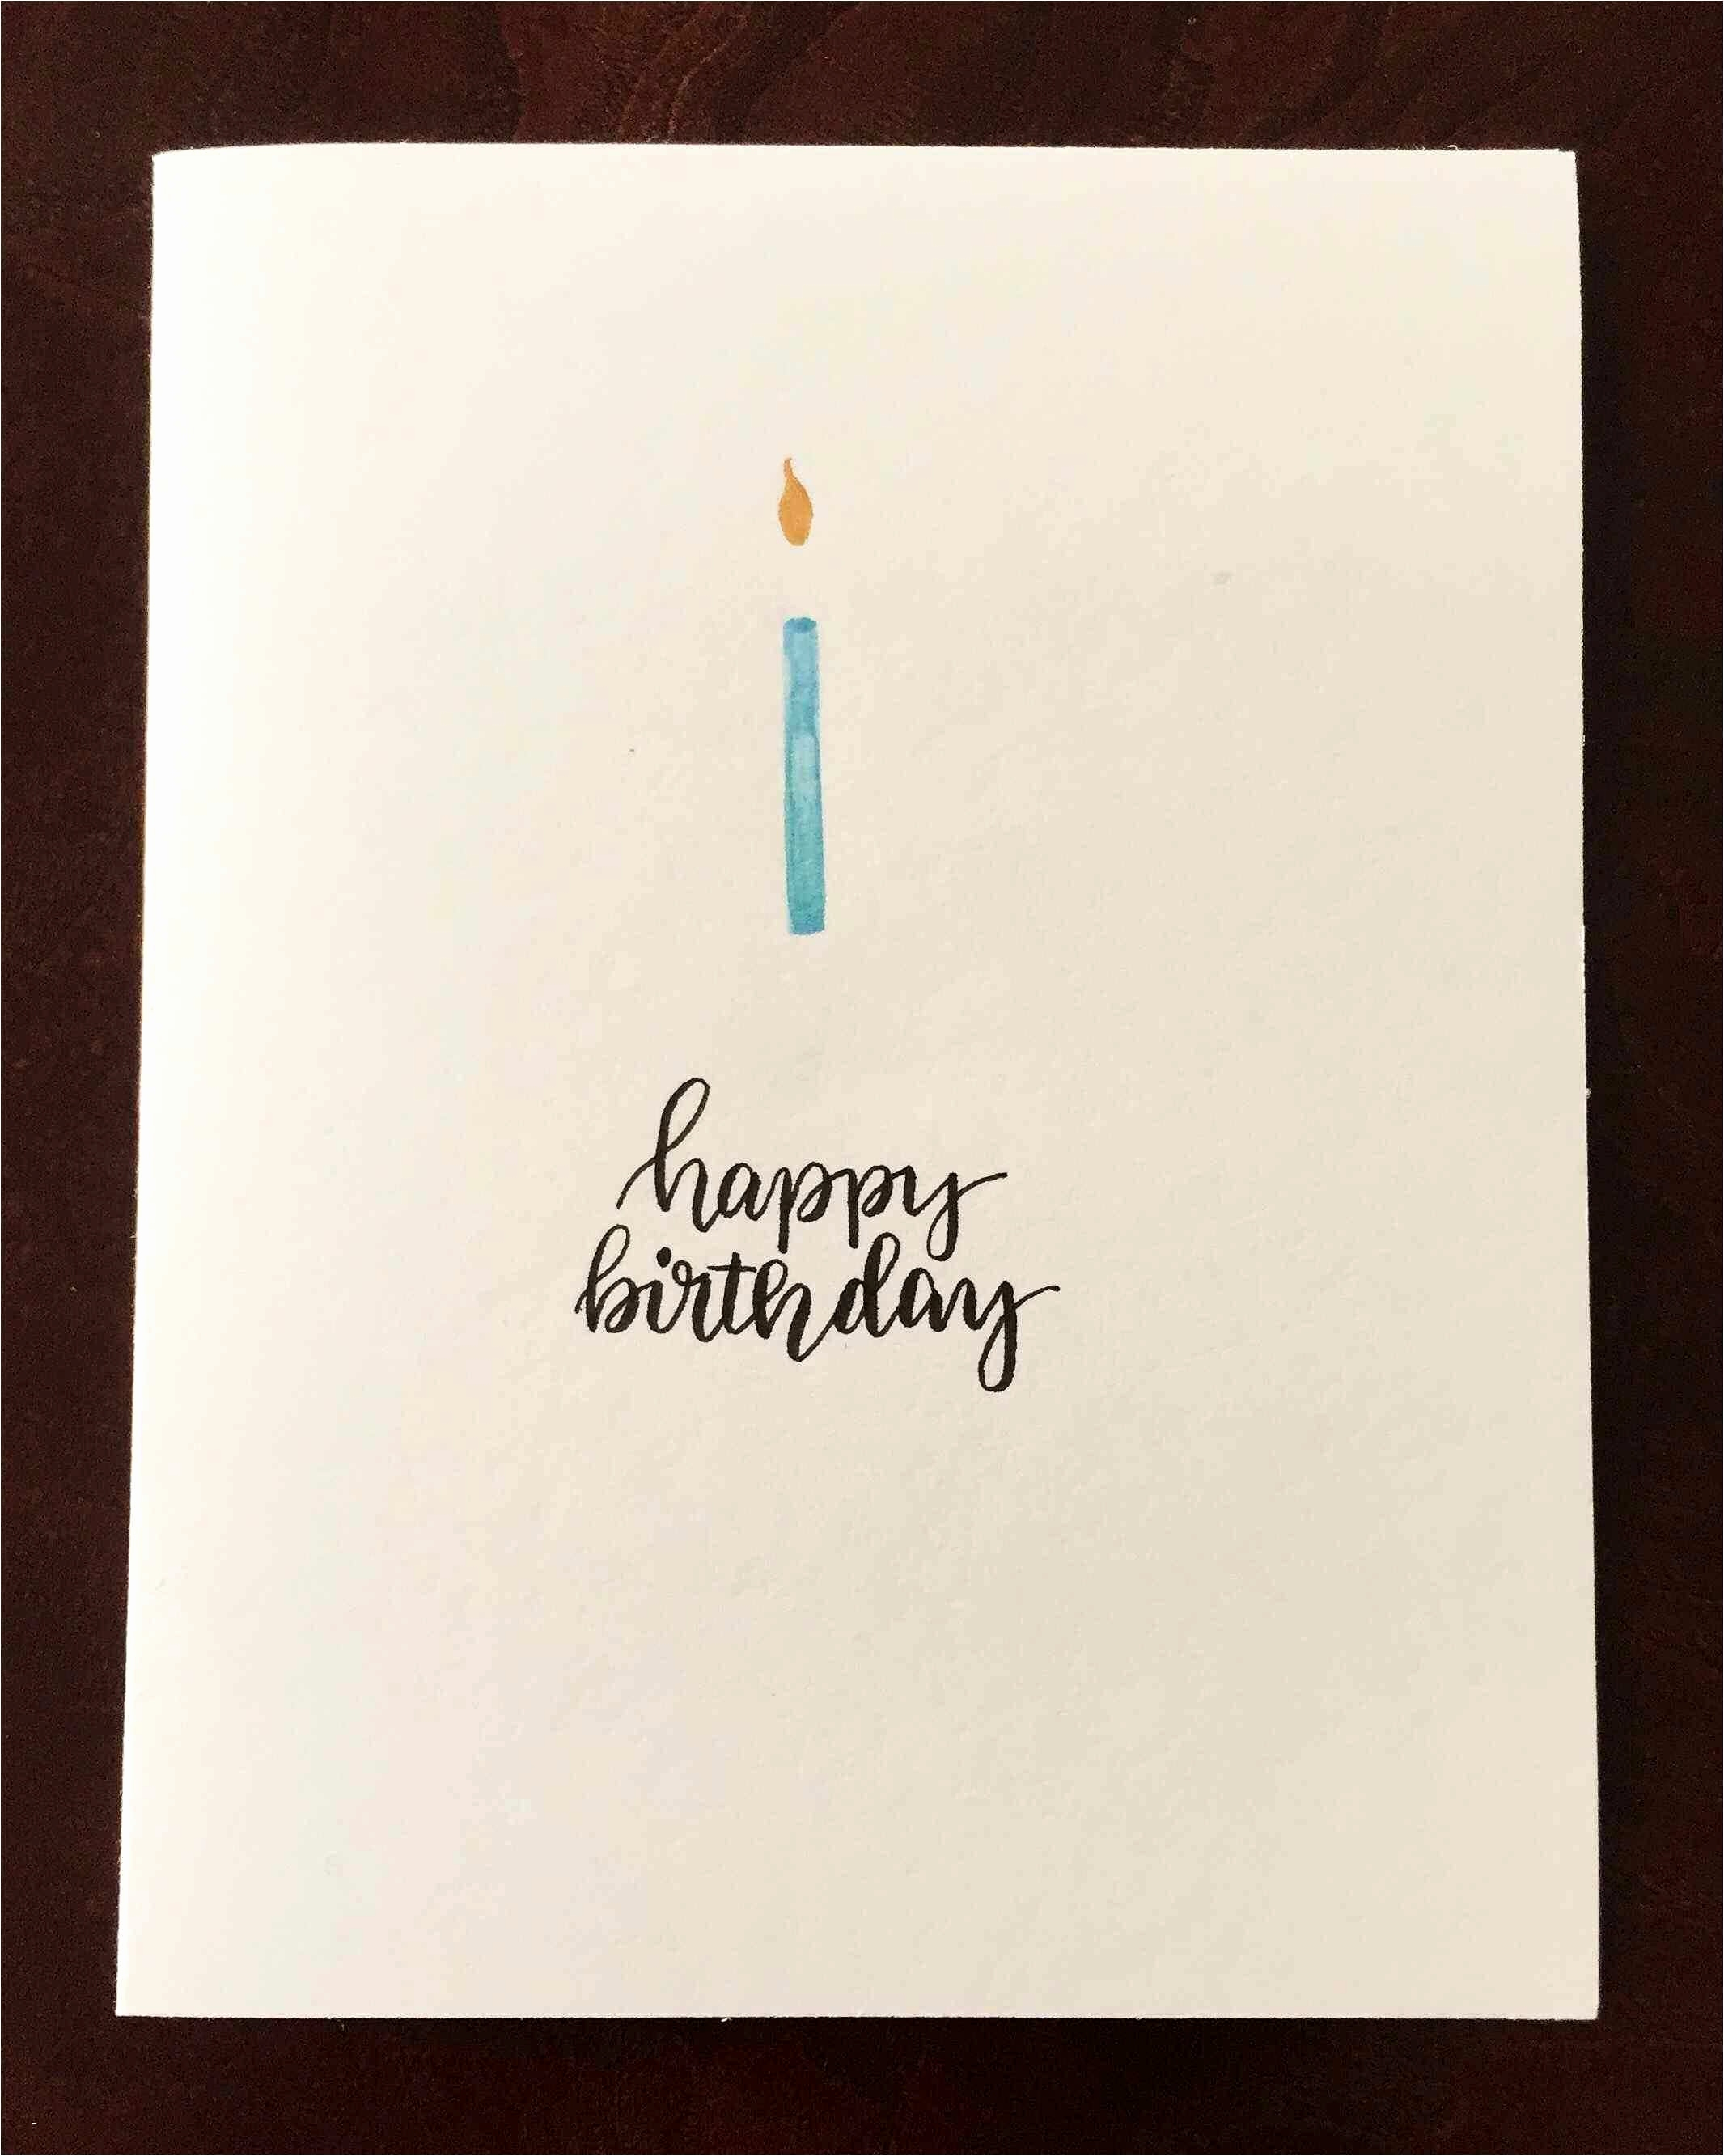 Creative Birthday Card Ideas For Boyfriend Handmade Birthday Card Ideas For Boyfriend Awesome Handmade Birthday